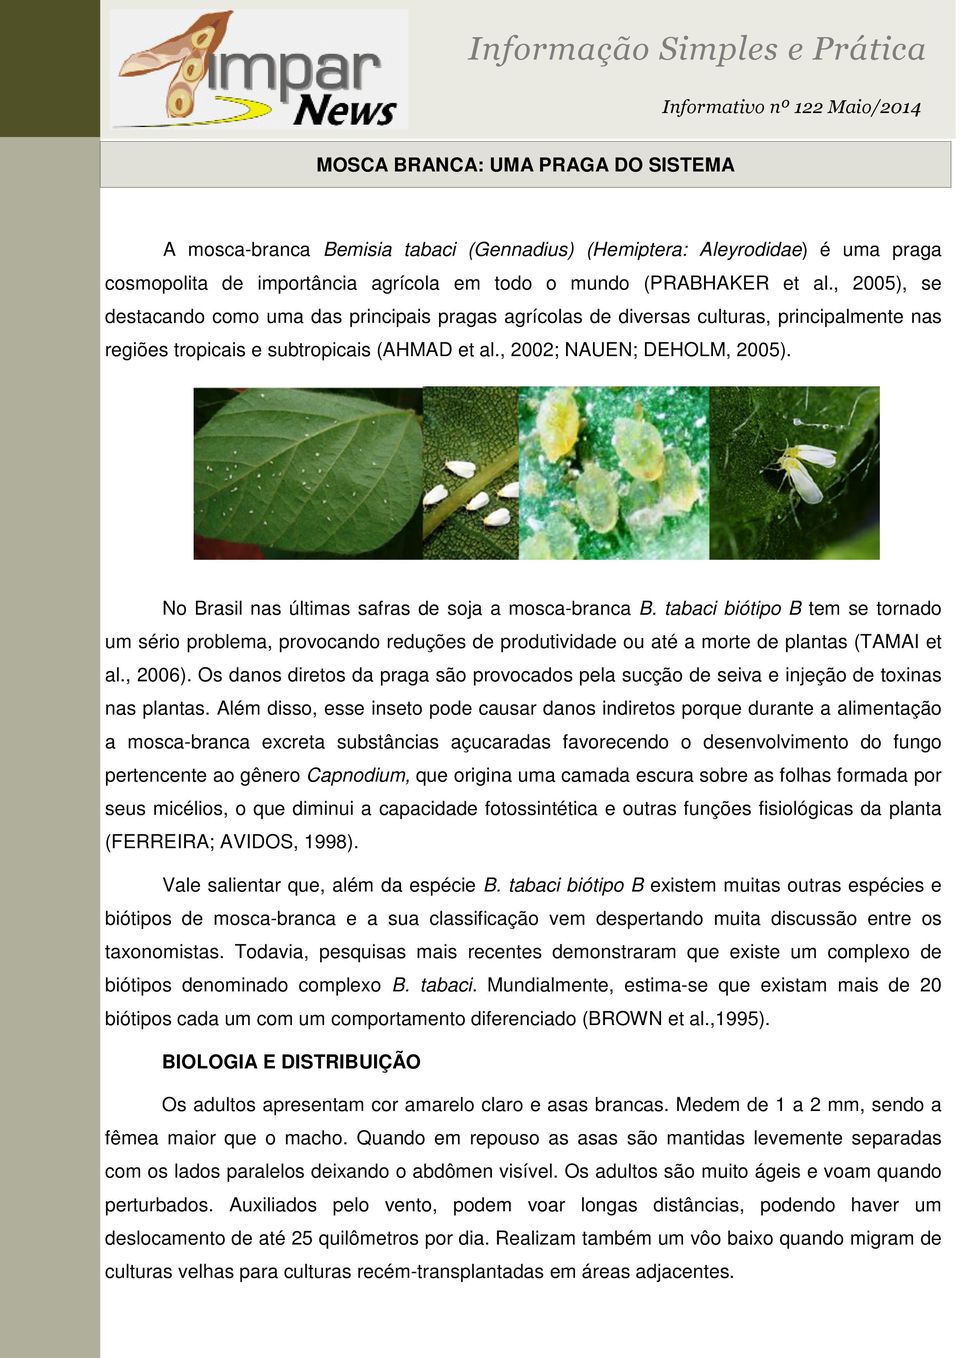 No Brasil nas últimas safras de soja a mosca-branca B. tabaci biótipo B tem se tornado um sério problema, provocando reduções de produtividade ou até a morte de plantas (TAMAI et al., 2006).